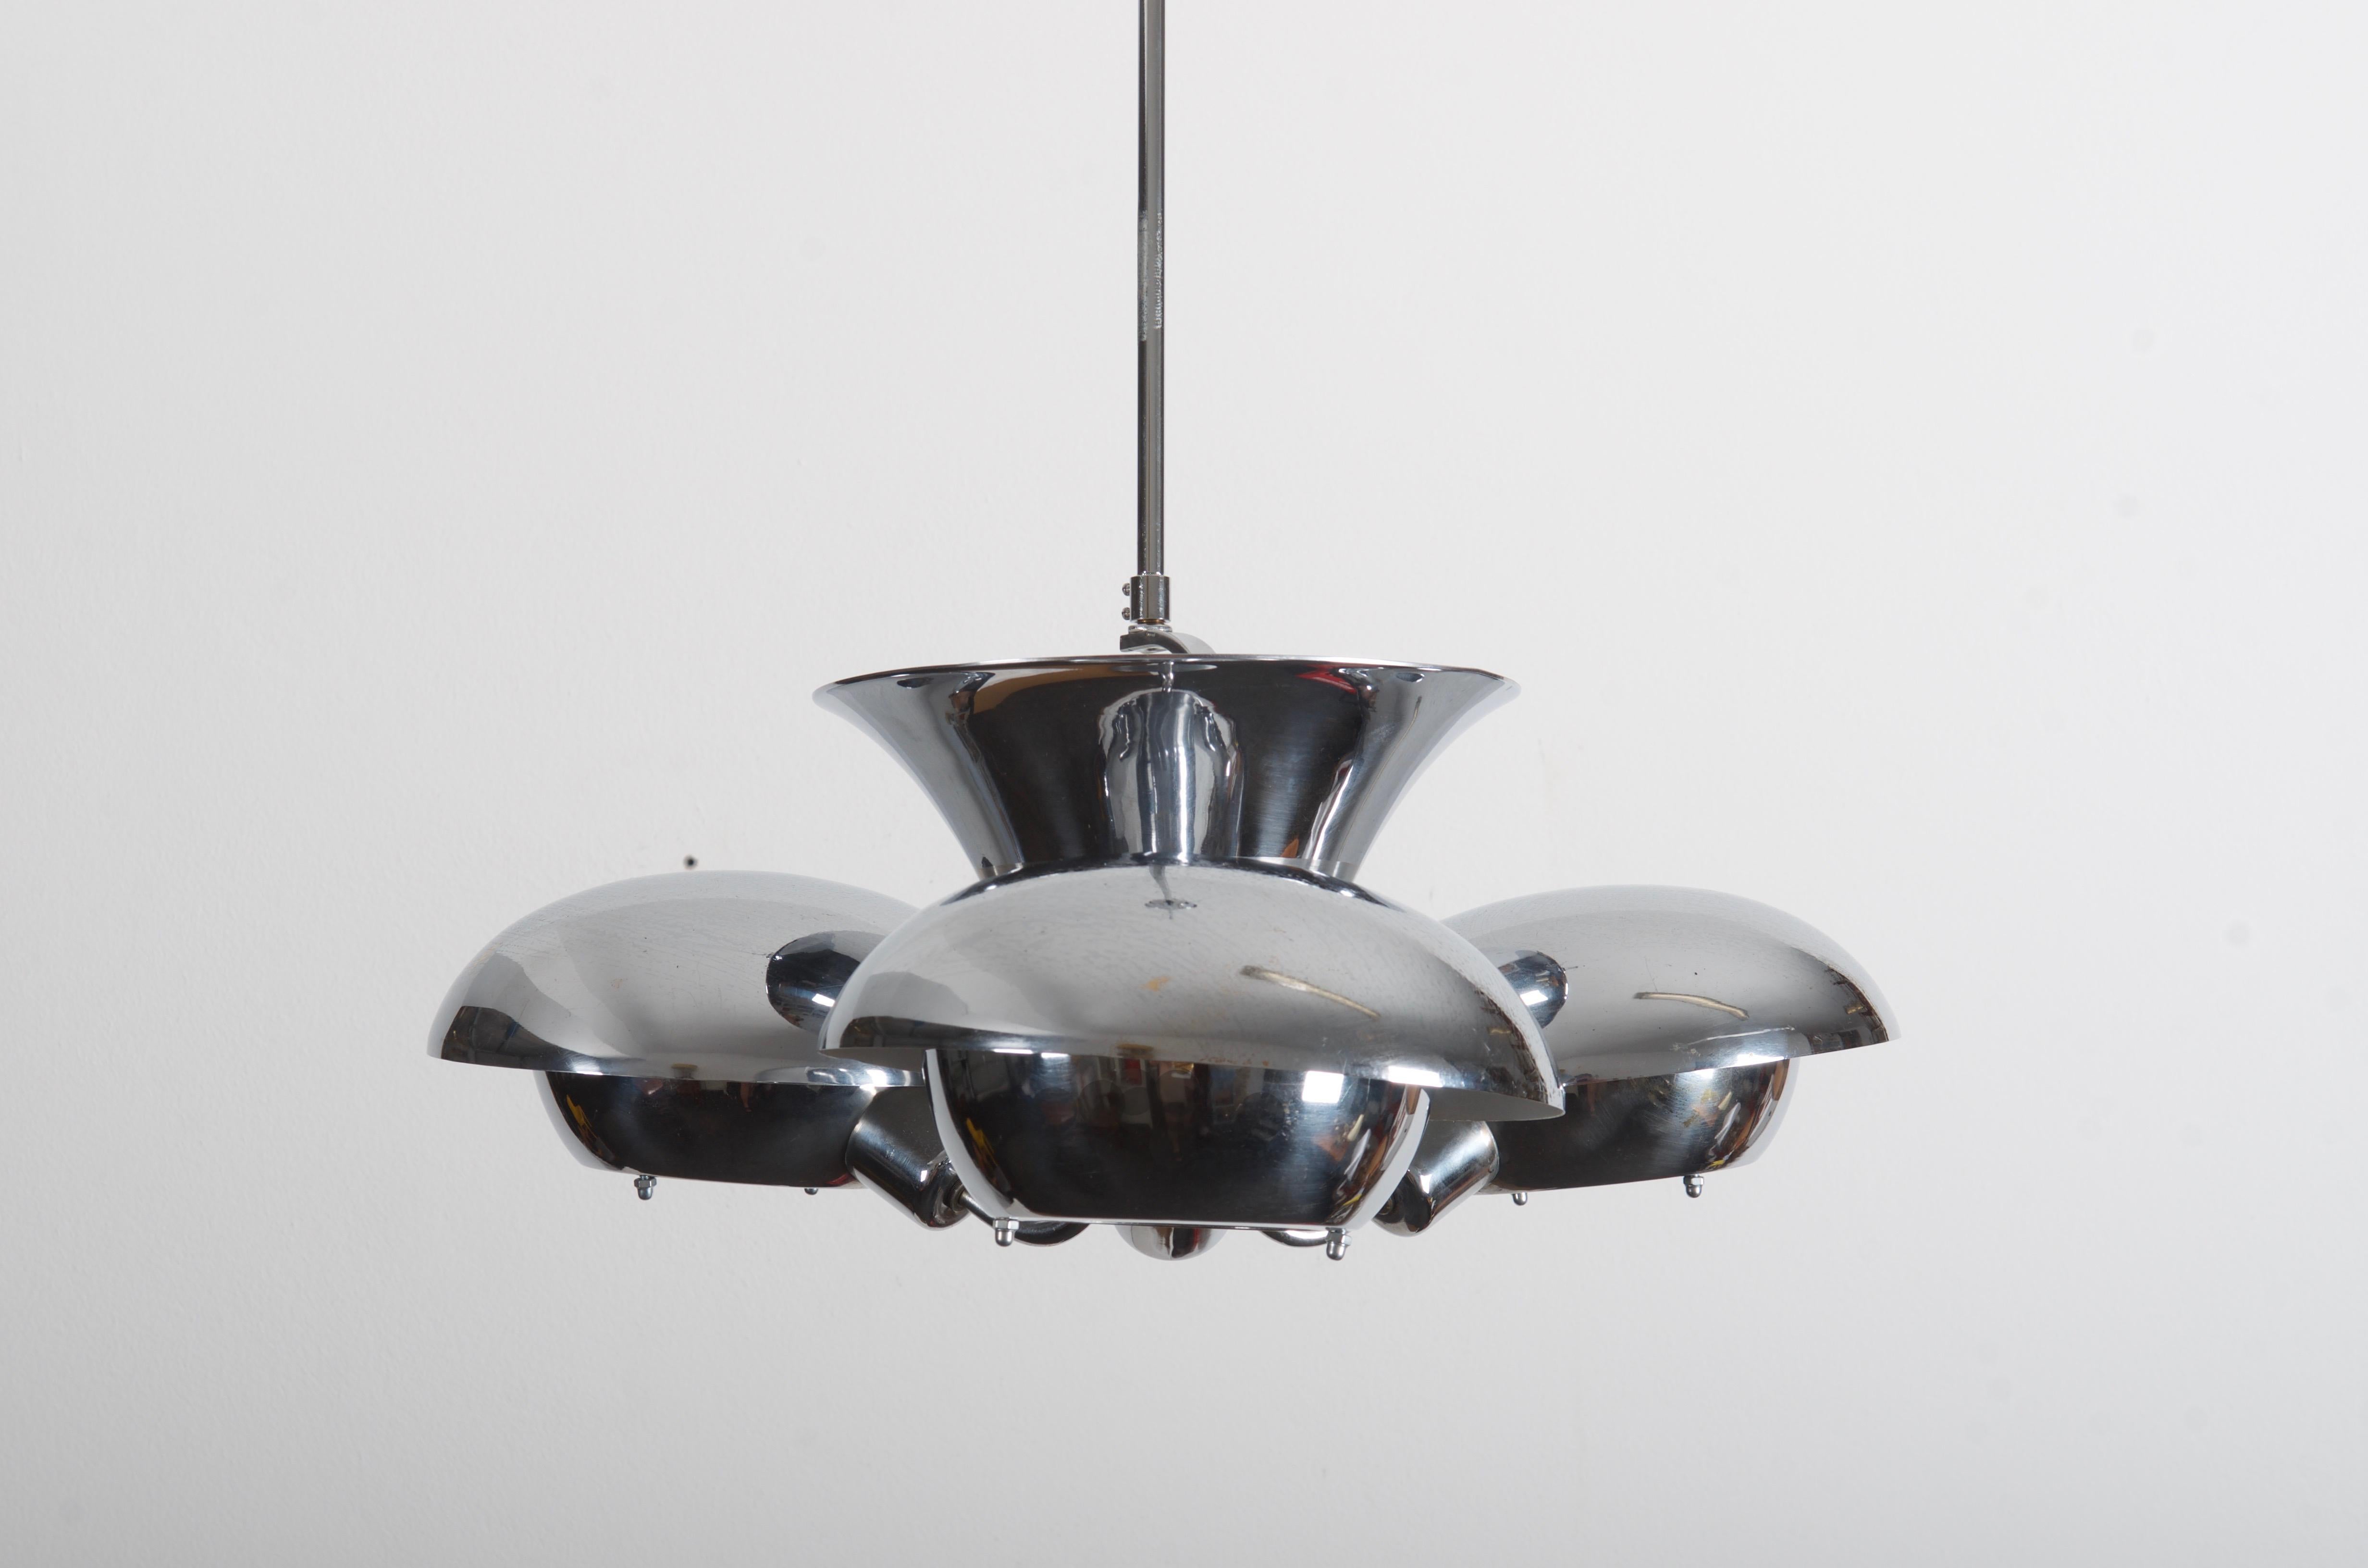 Magnifique design Bauhaus pour un éclairage indirect réalisé dans les années 1930 par Franta Anýž pour Napako.
Construction en acier nickelé et peint, équipée de quatre douilles E27.